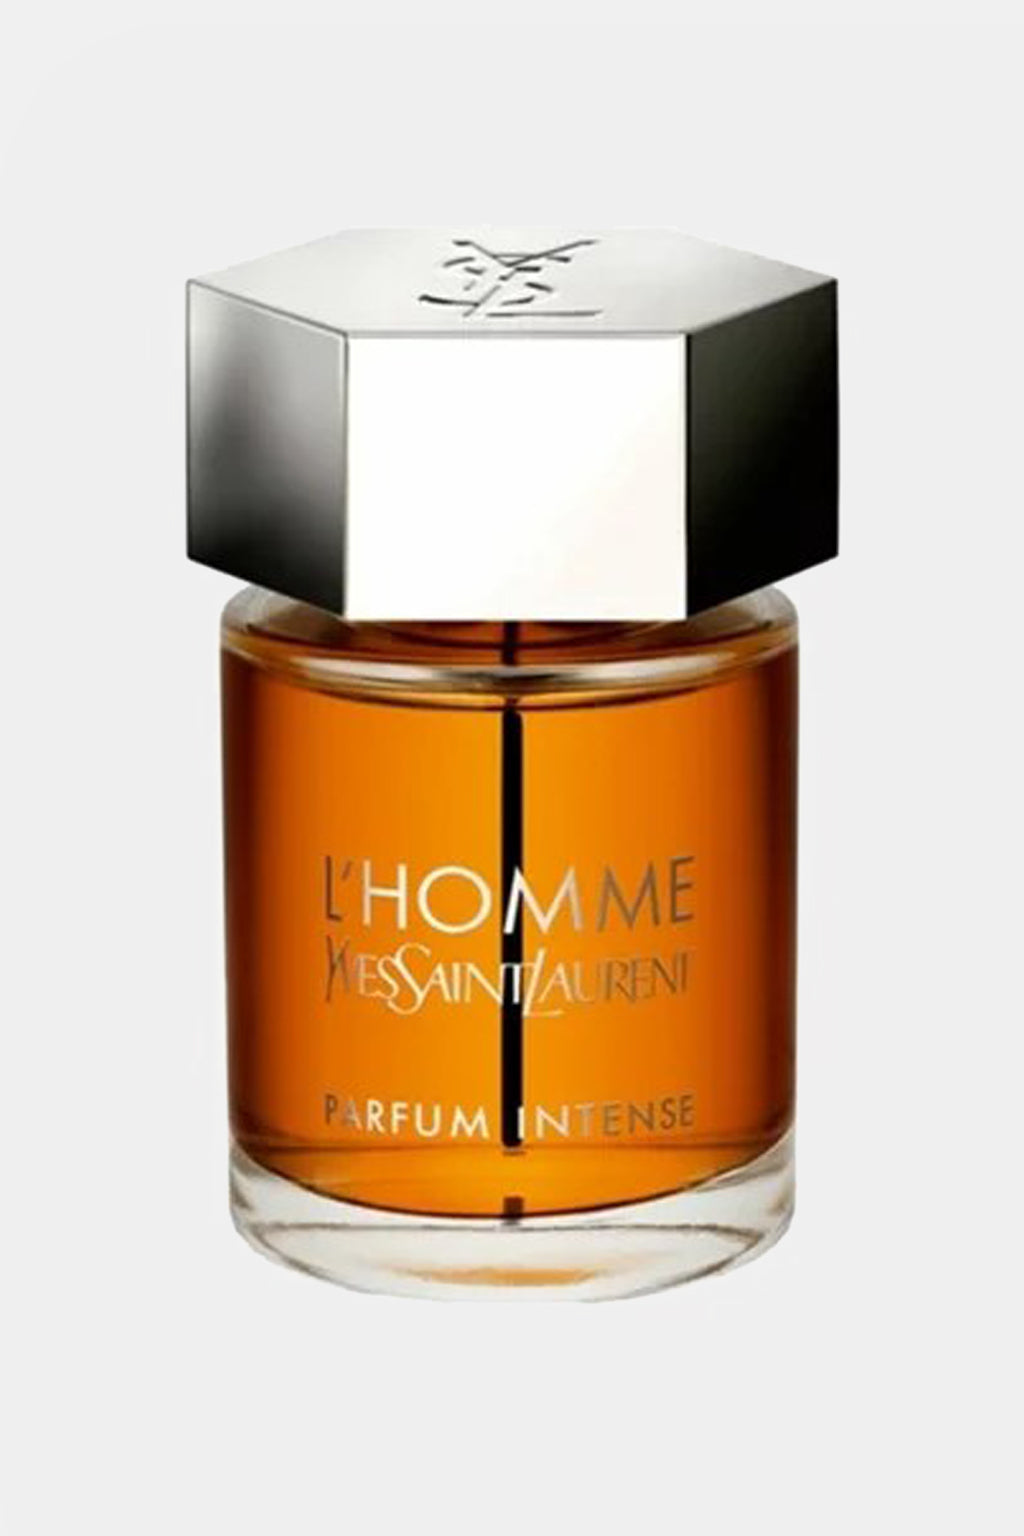 Yves Saint Laurent - L'Homme L'Intense Eau de Parfum